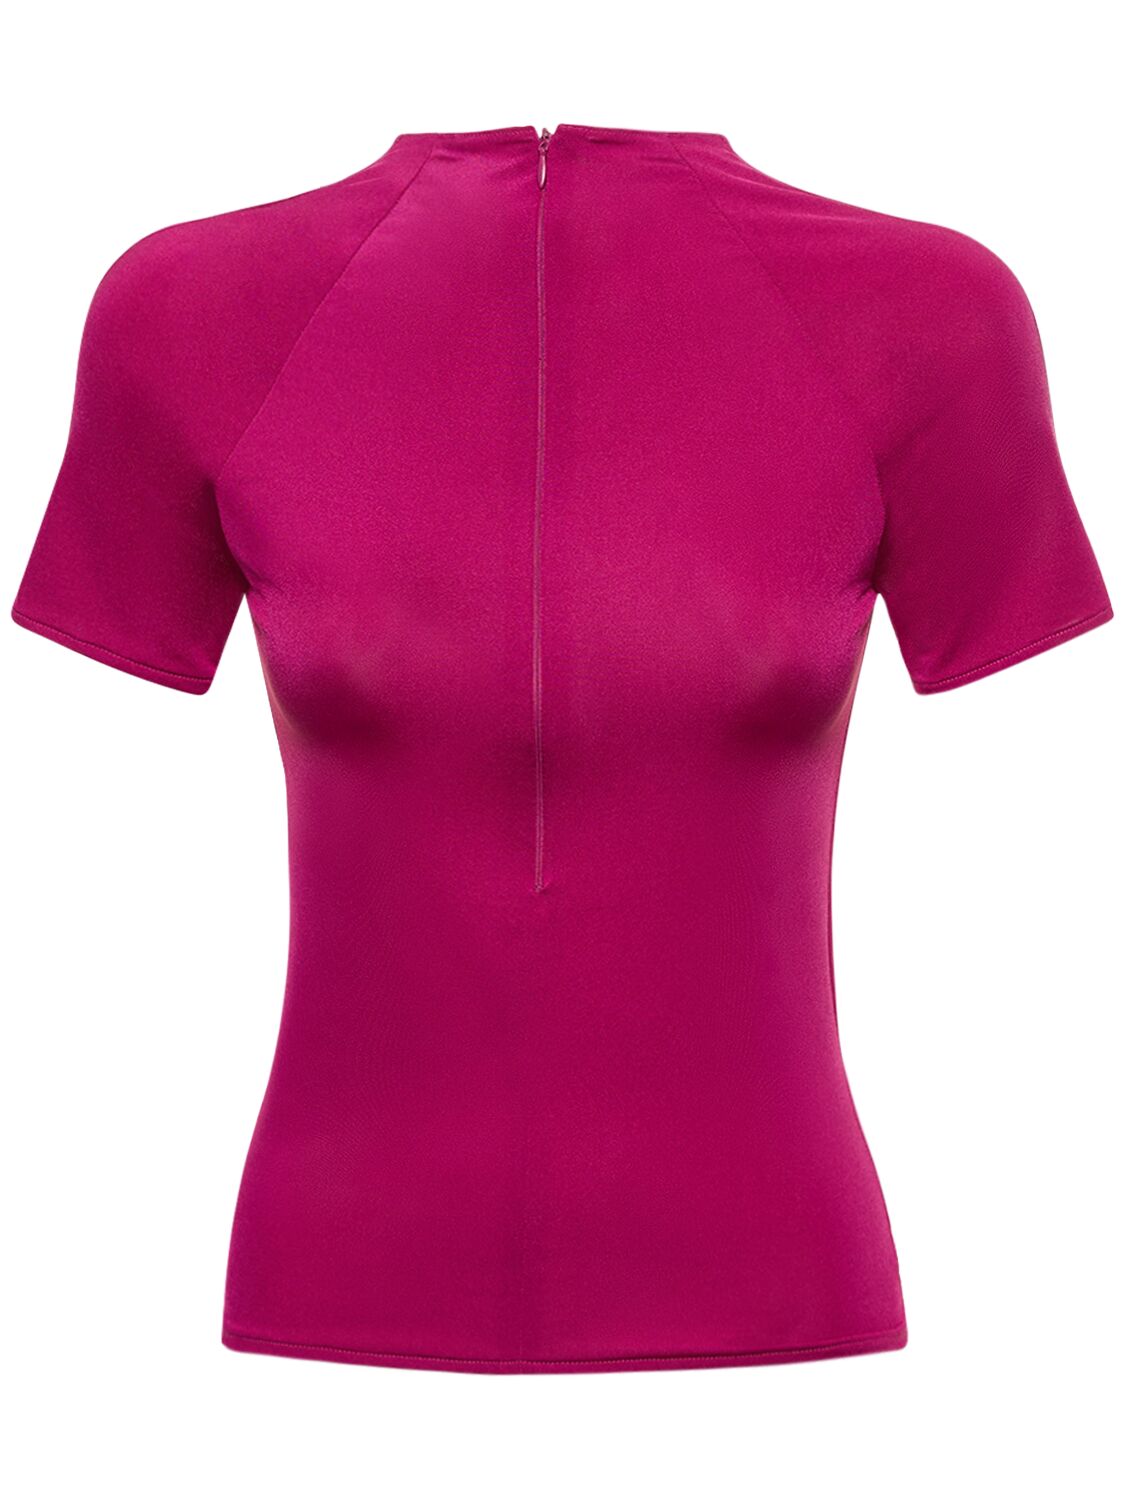 Image of Vanden Jersey Short Sleeve Zip Top